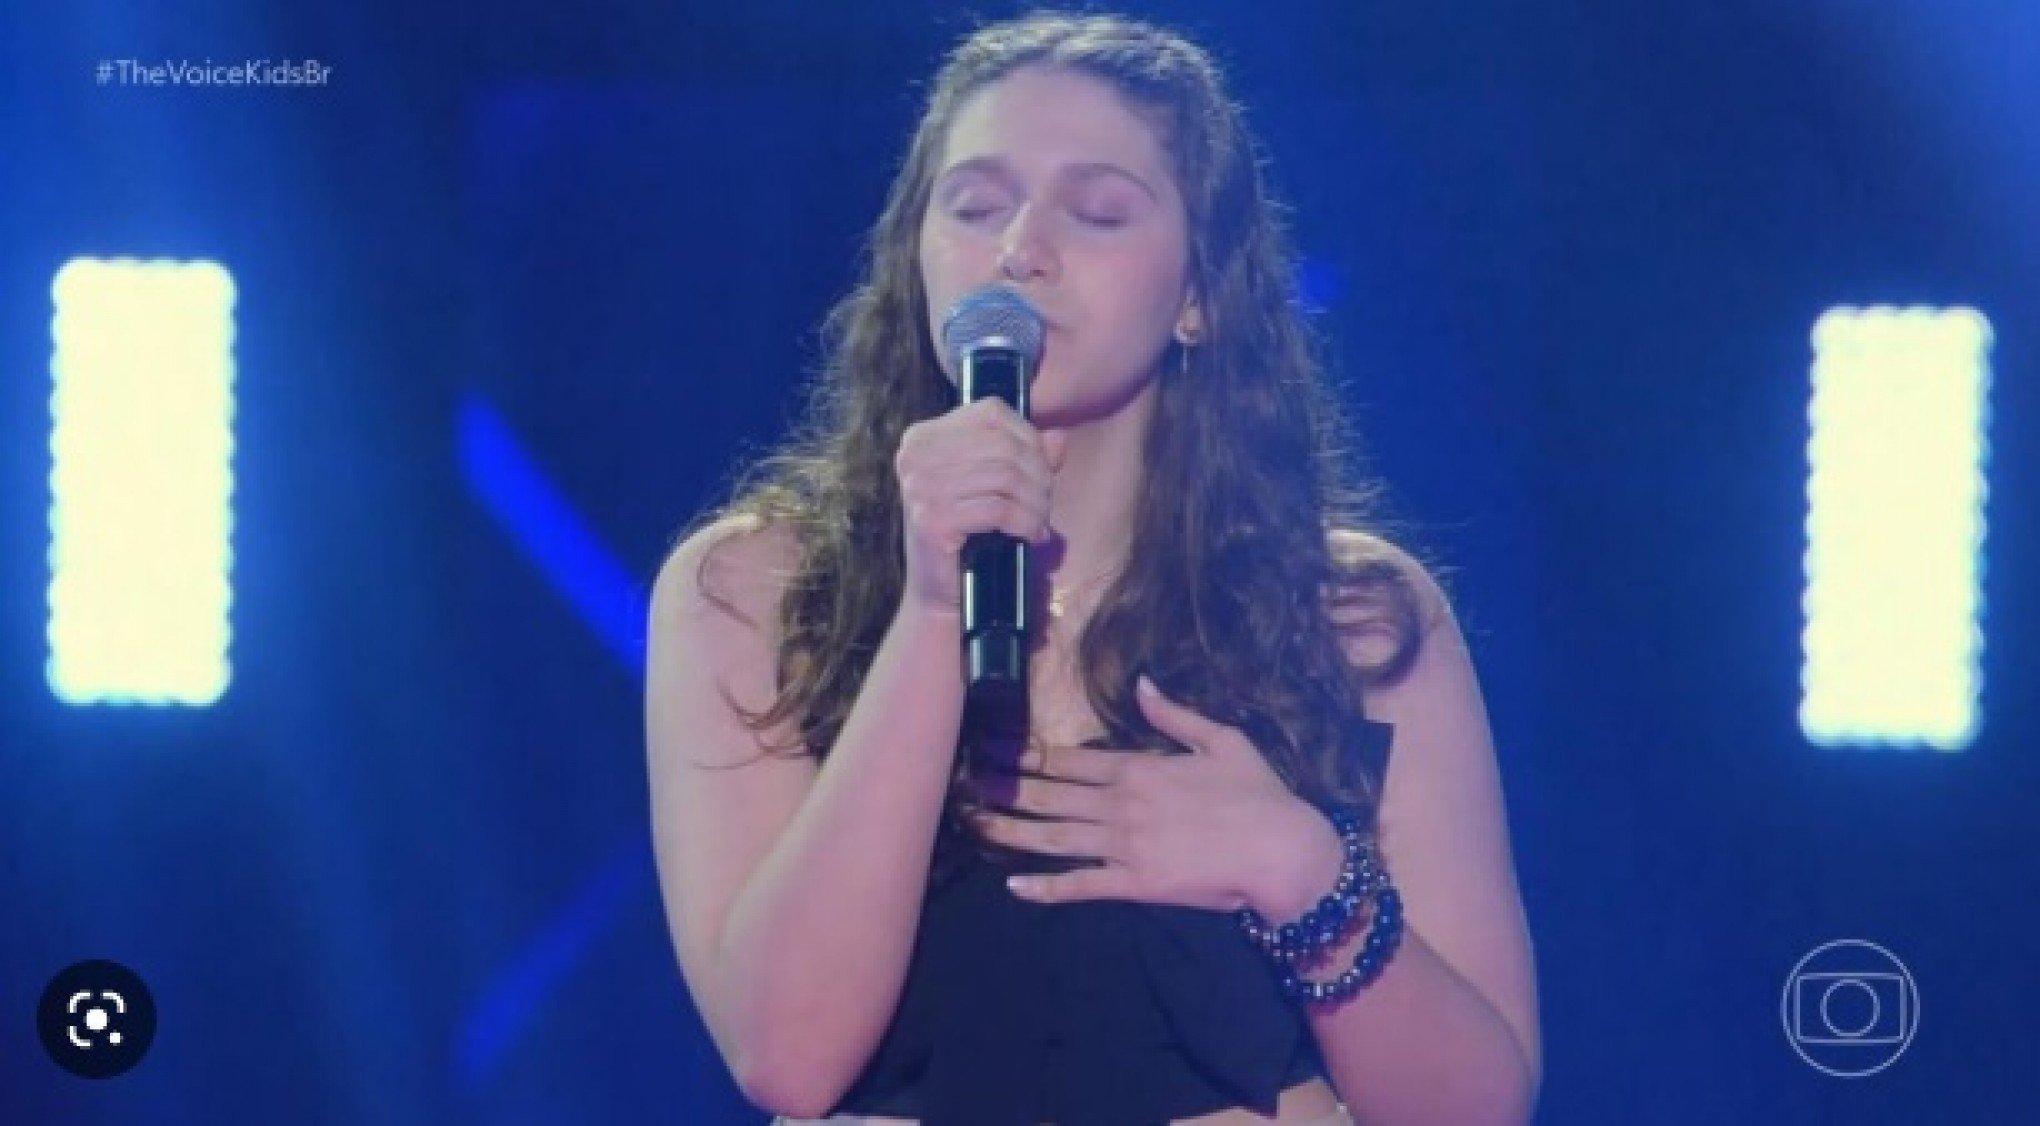 "Pensei que o meu coração iria saltar", conta jovem de Canoas sobre cantar no The Voice Kids